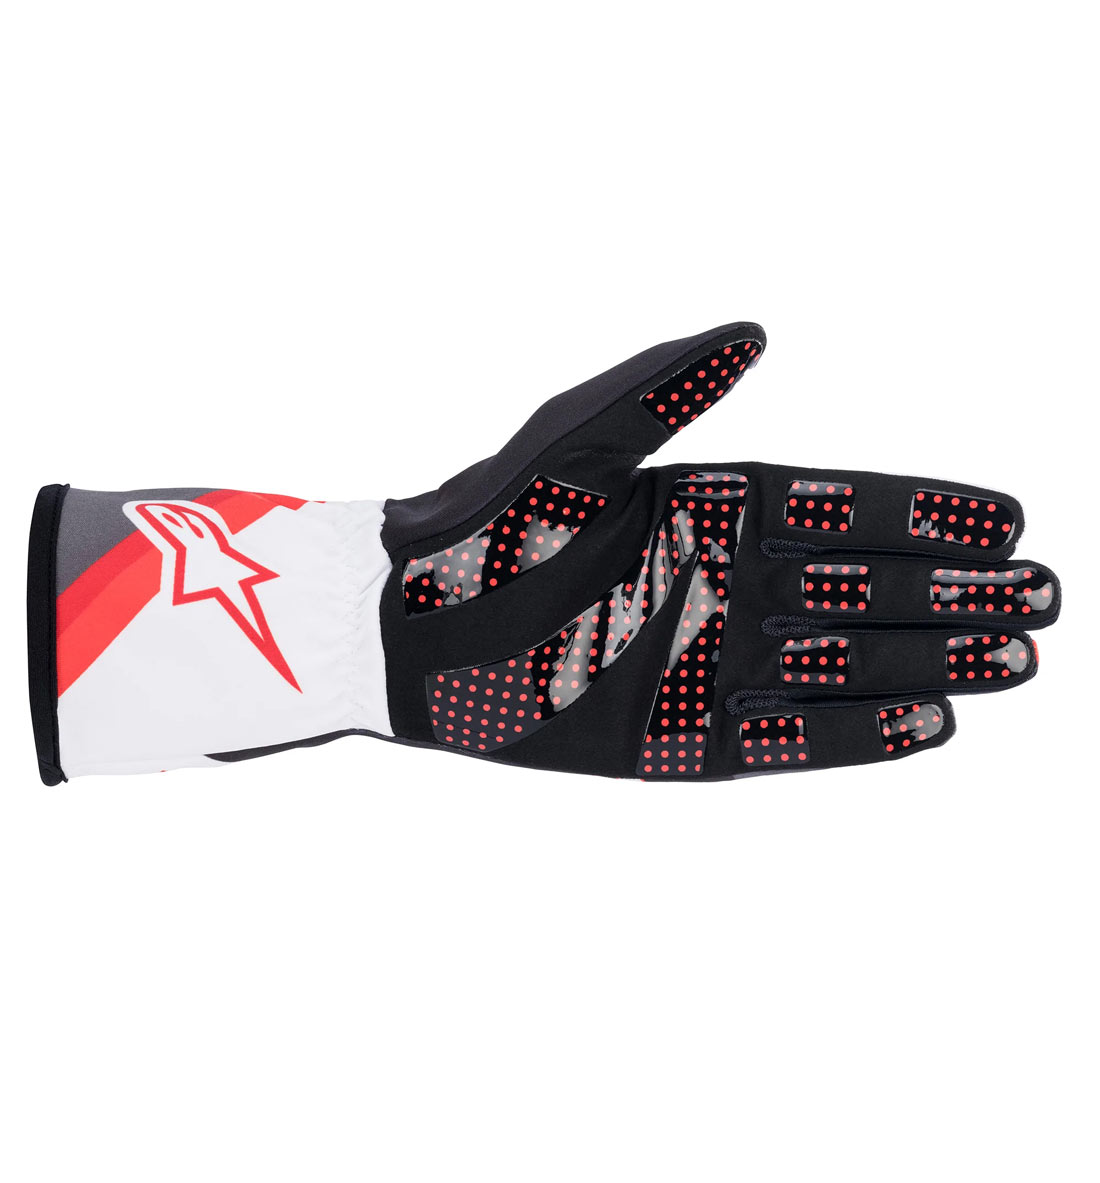 Alpinestars Tech-1 K V2 Graphic Gloves - Black/White/Anthracite/Red